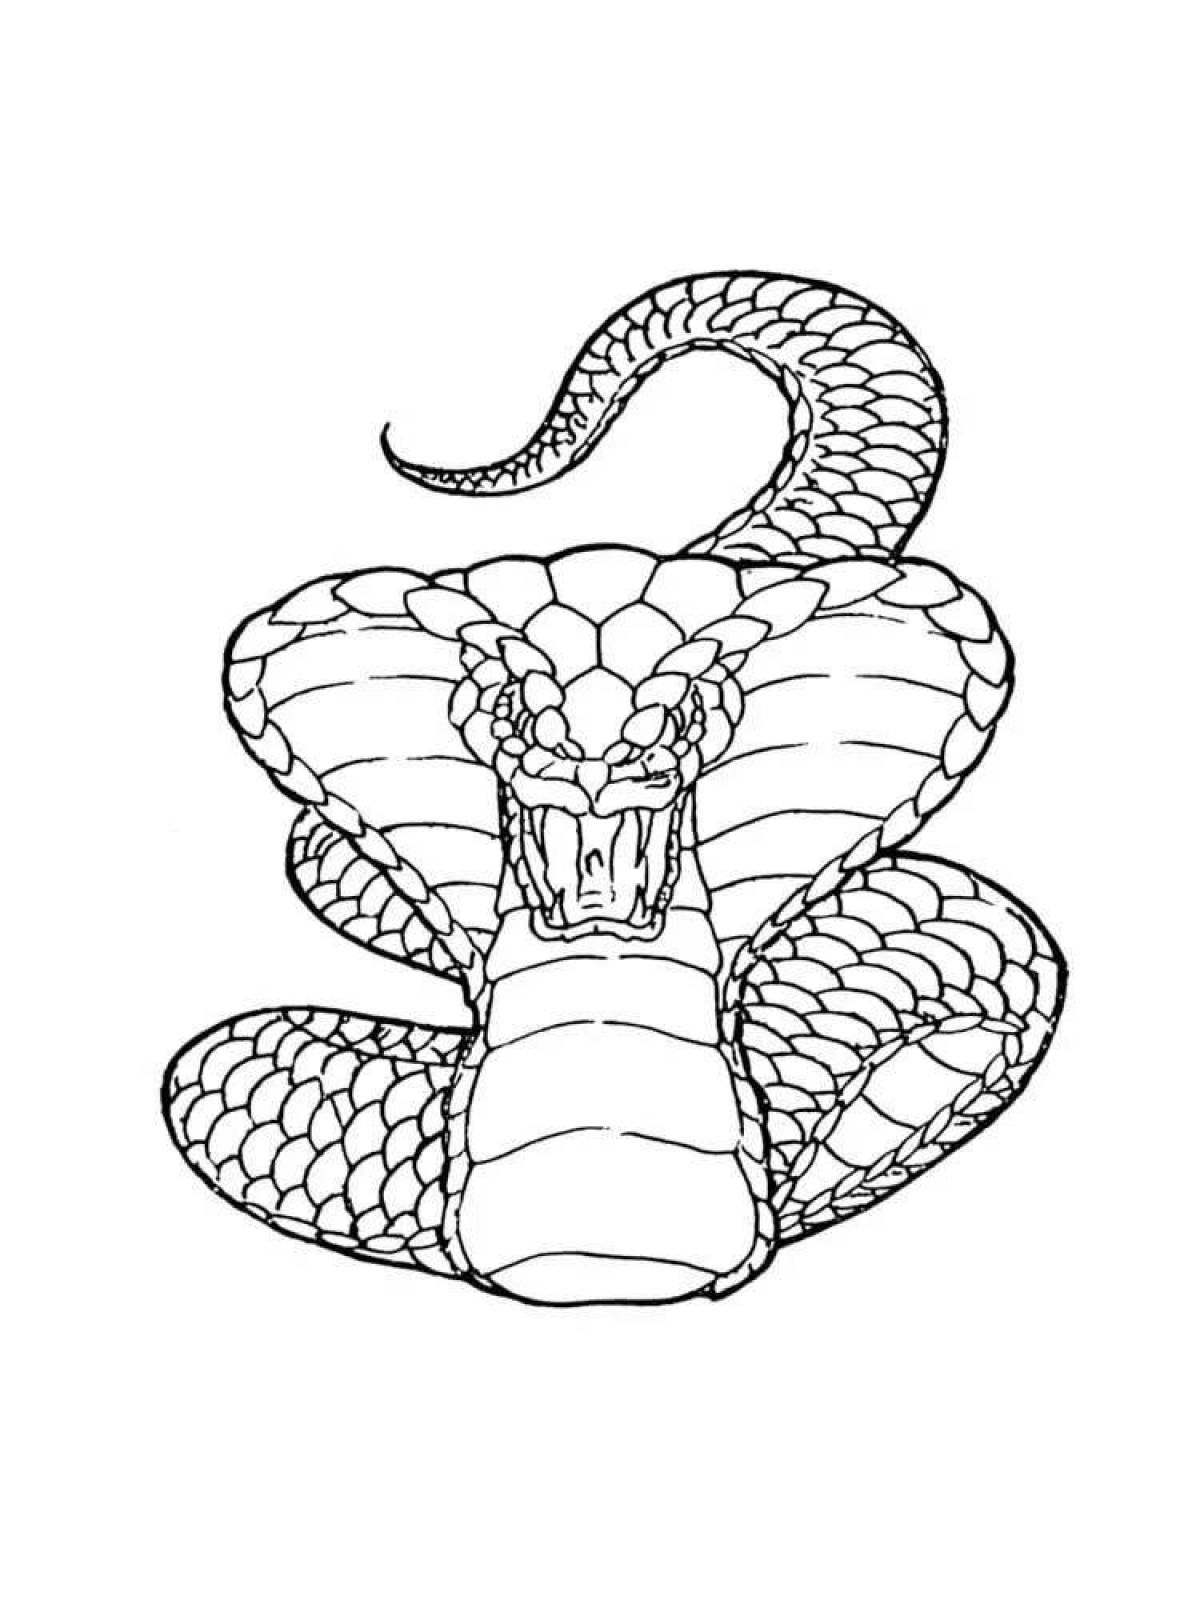 Экзотическая раскраска королевская кобра